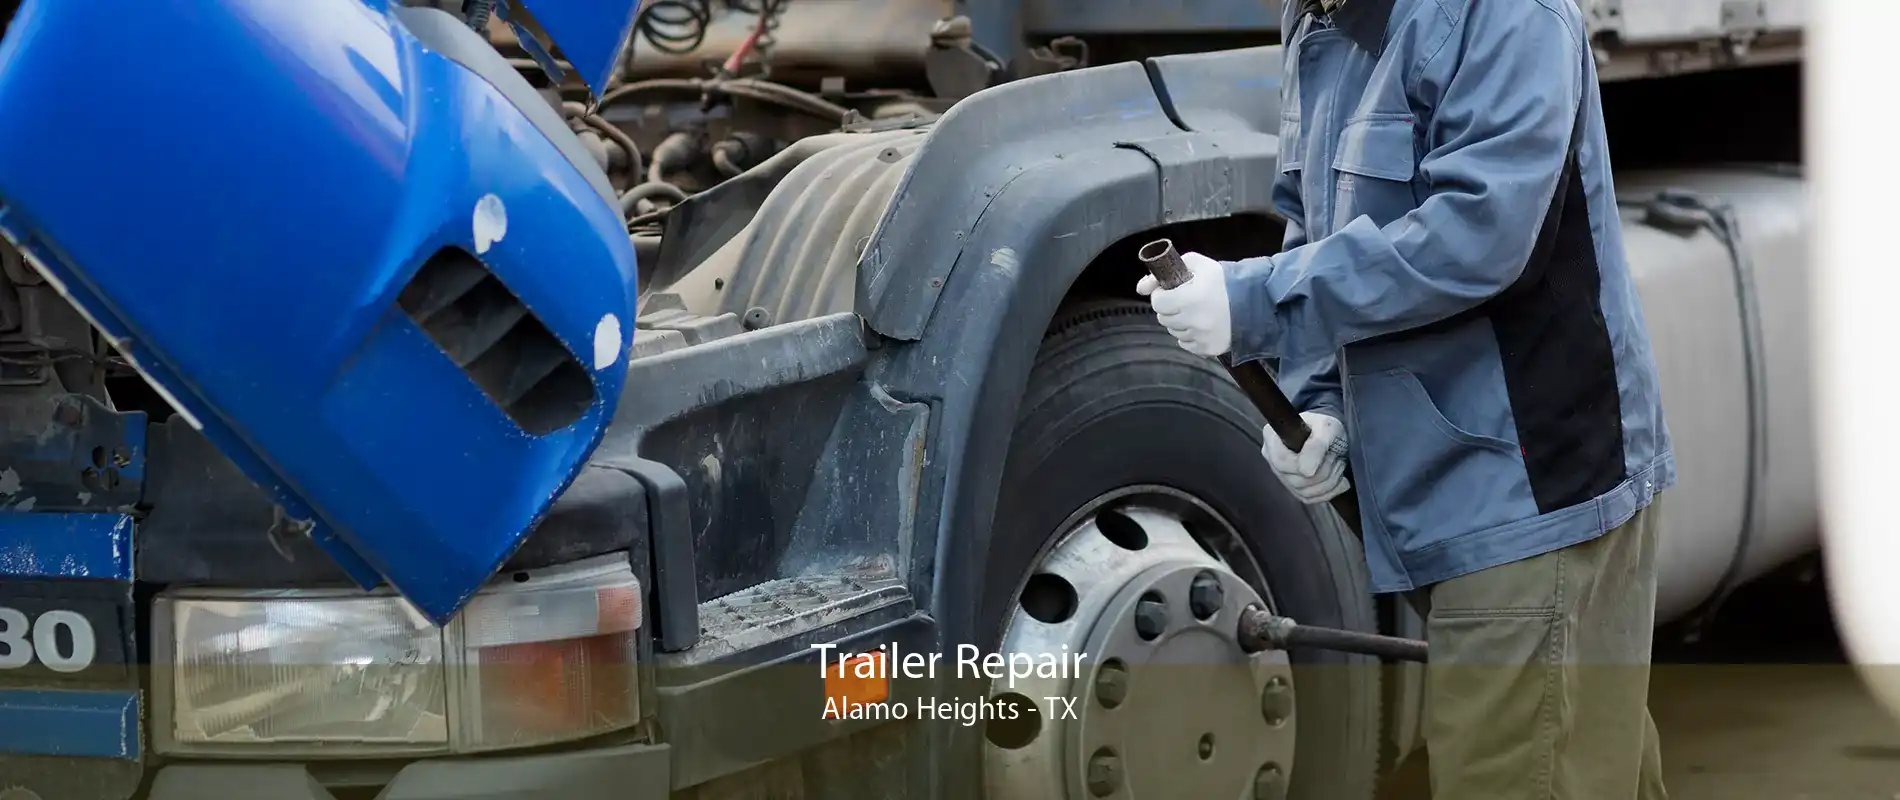 Trailer Repair Alamo Heights - TX